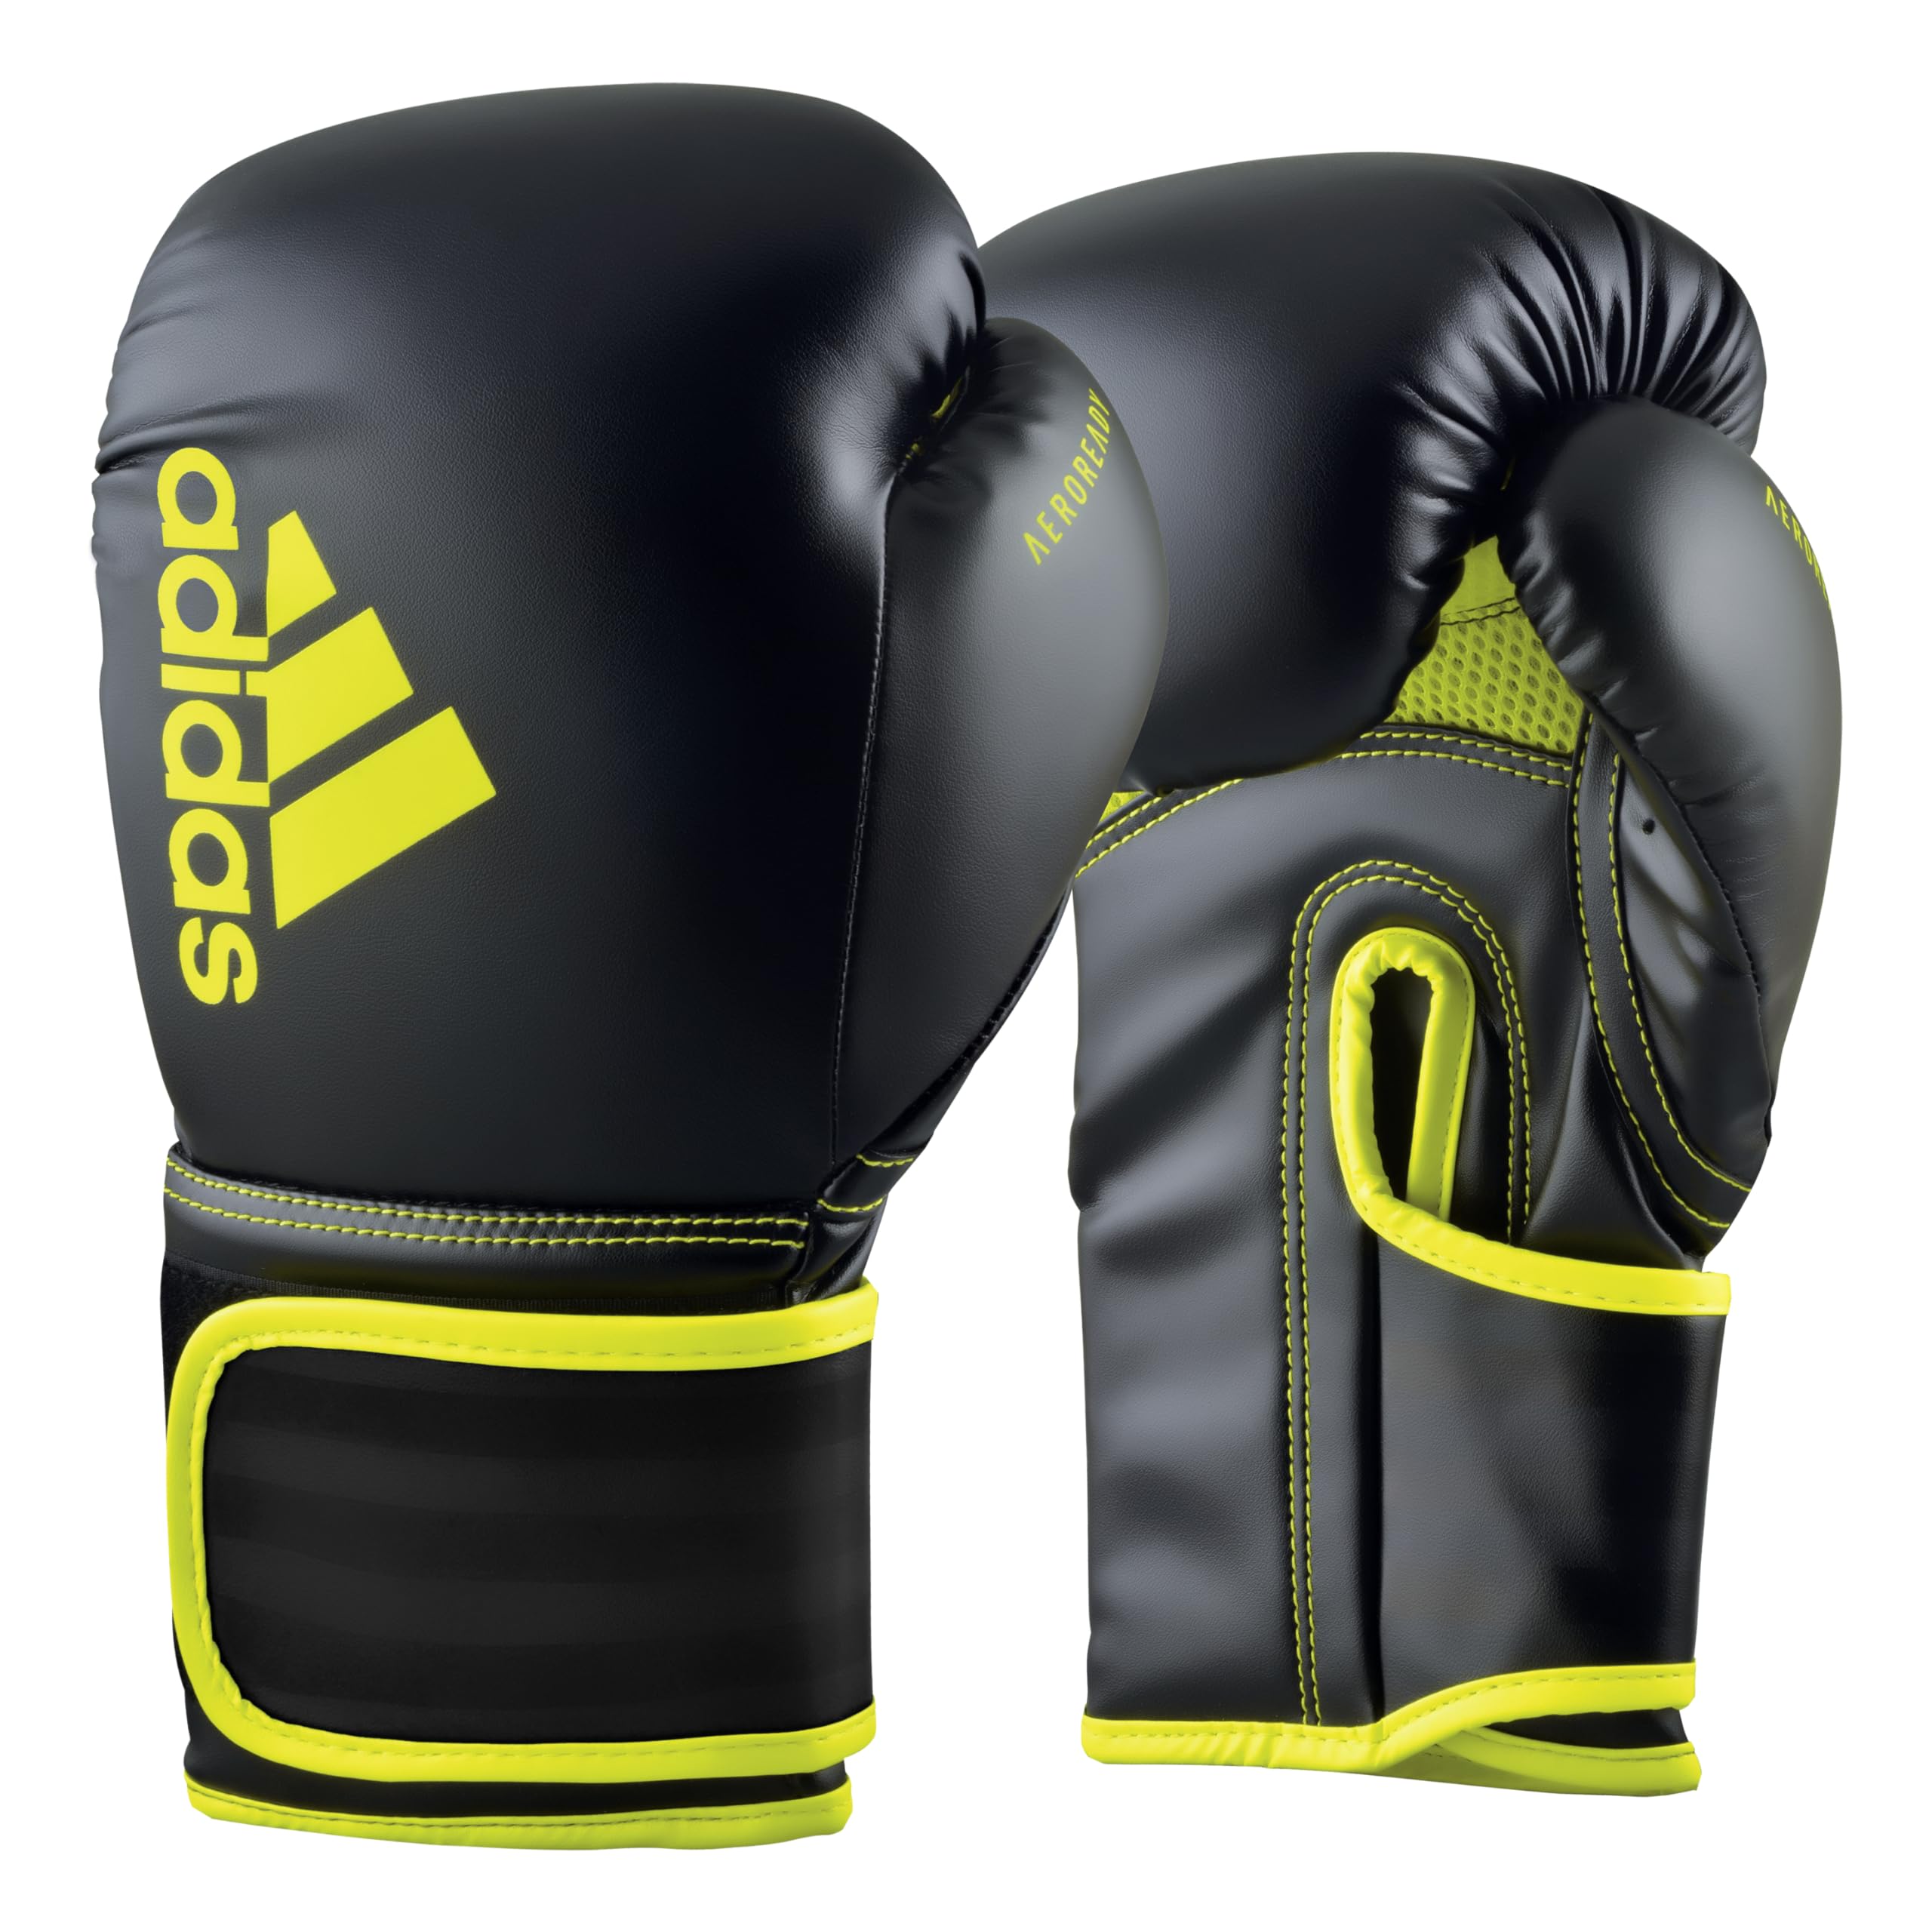 adidas Boxhandschuhe Hybrid 80 - geeignet fürs Boxen, Kickboxen, MMA, Fitness & Training - für Kindern, Männer oder Frauen - Schwarz/Gelb - 6 oz